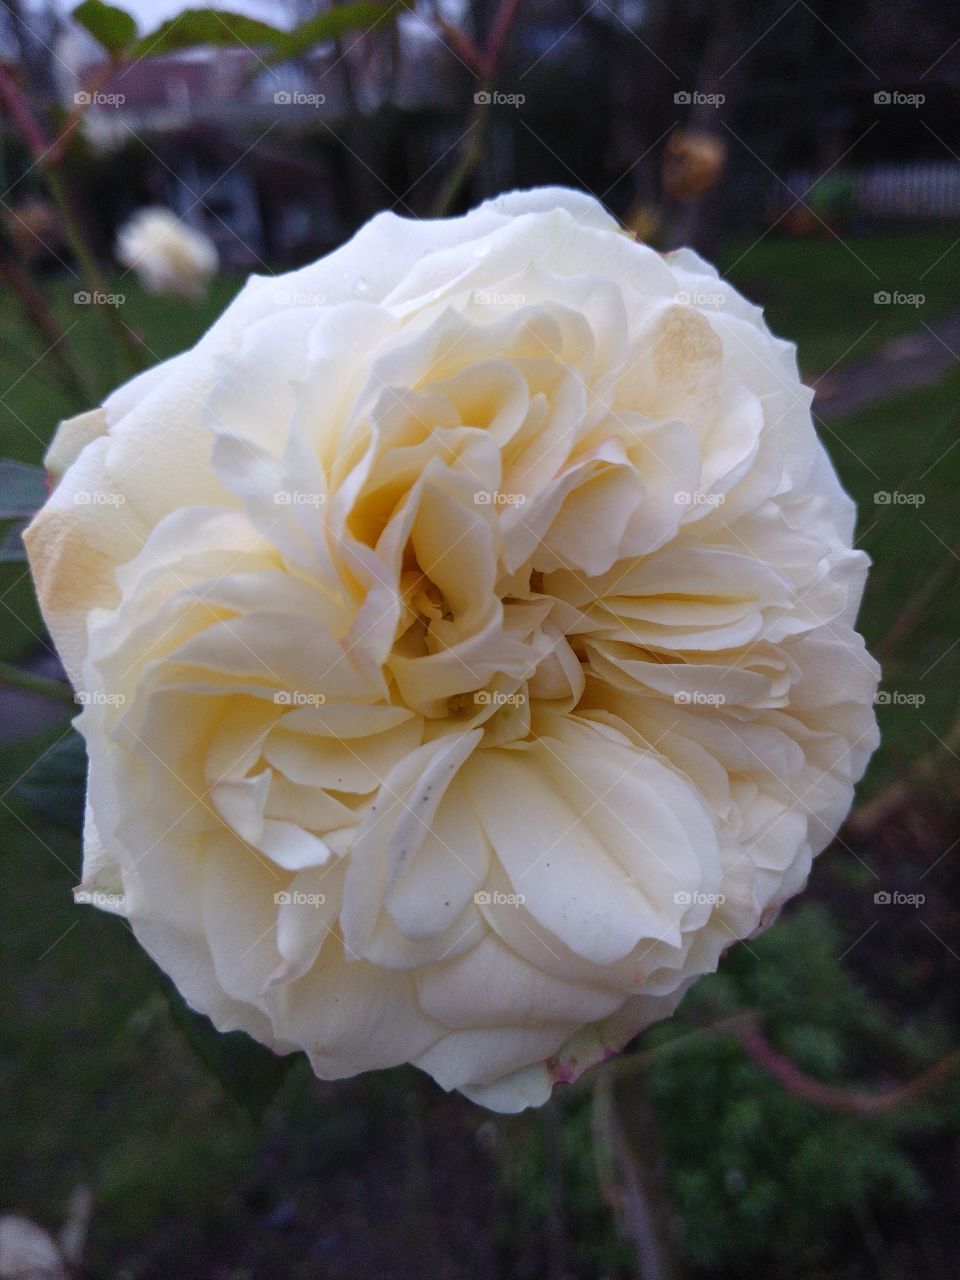 Closeup of large, cream rose